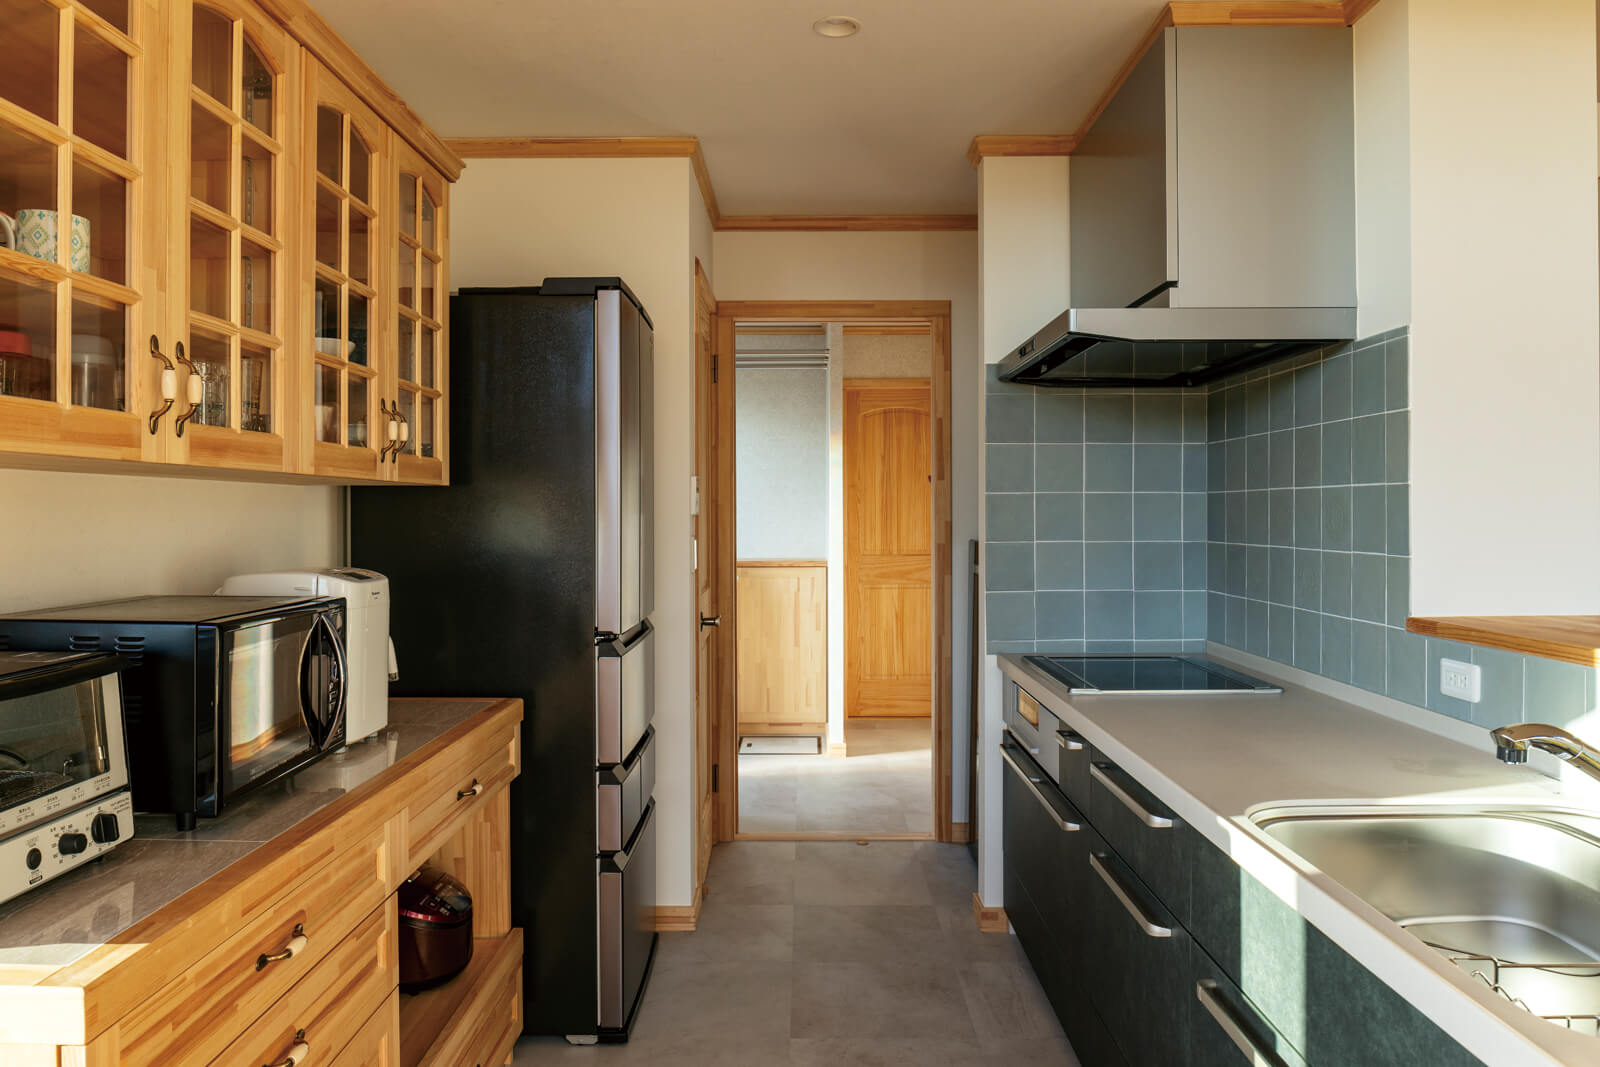 背面に容量たっぷりの収納を備えた使い勝手の良いキッチン。裏口、水まわりへも裏動線でアクセスでき、効率よく家事が行える